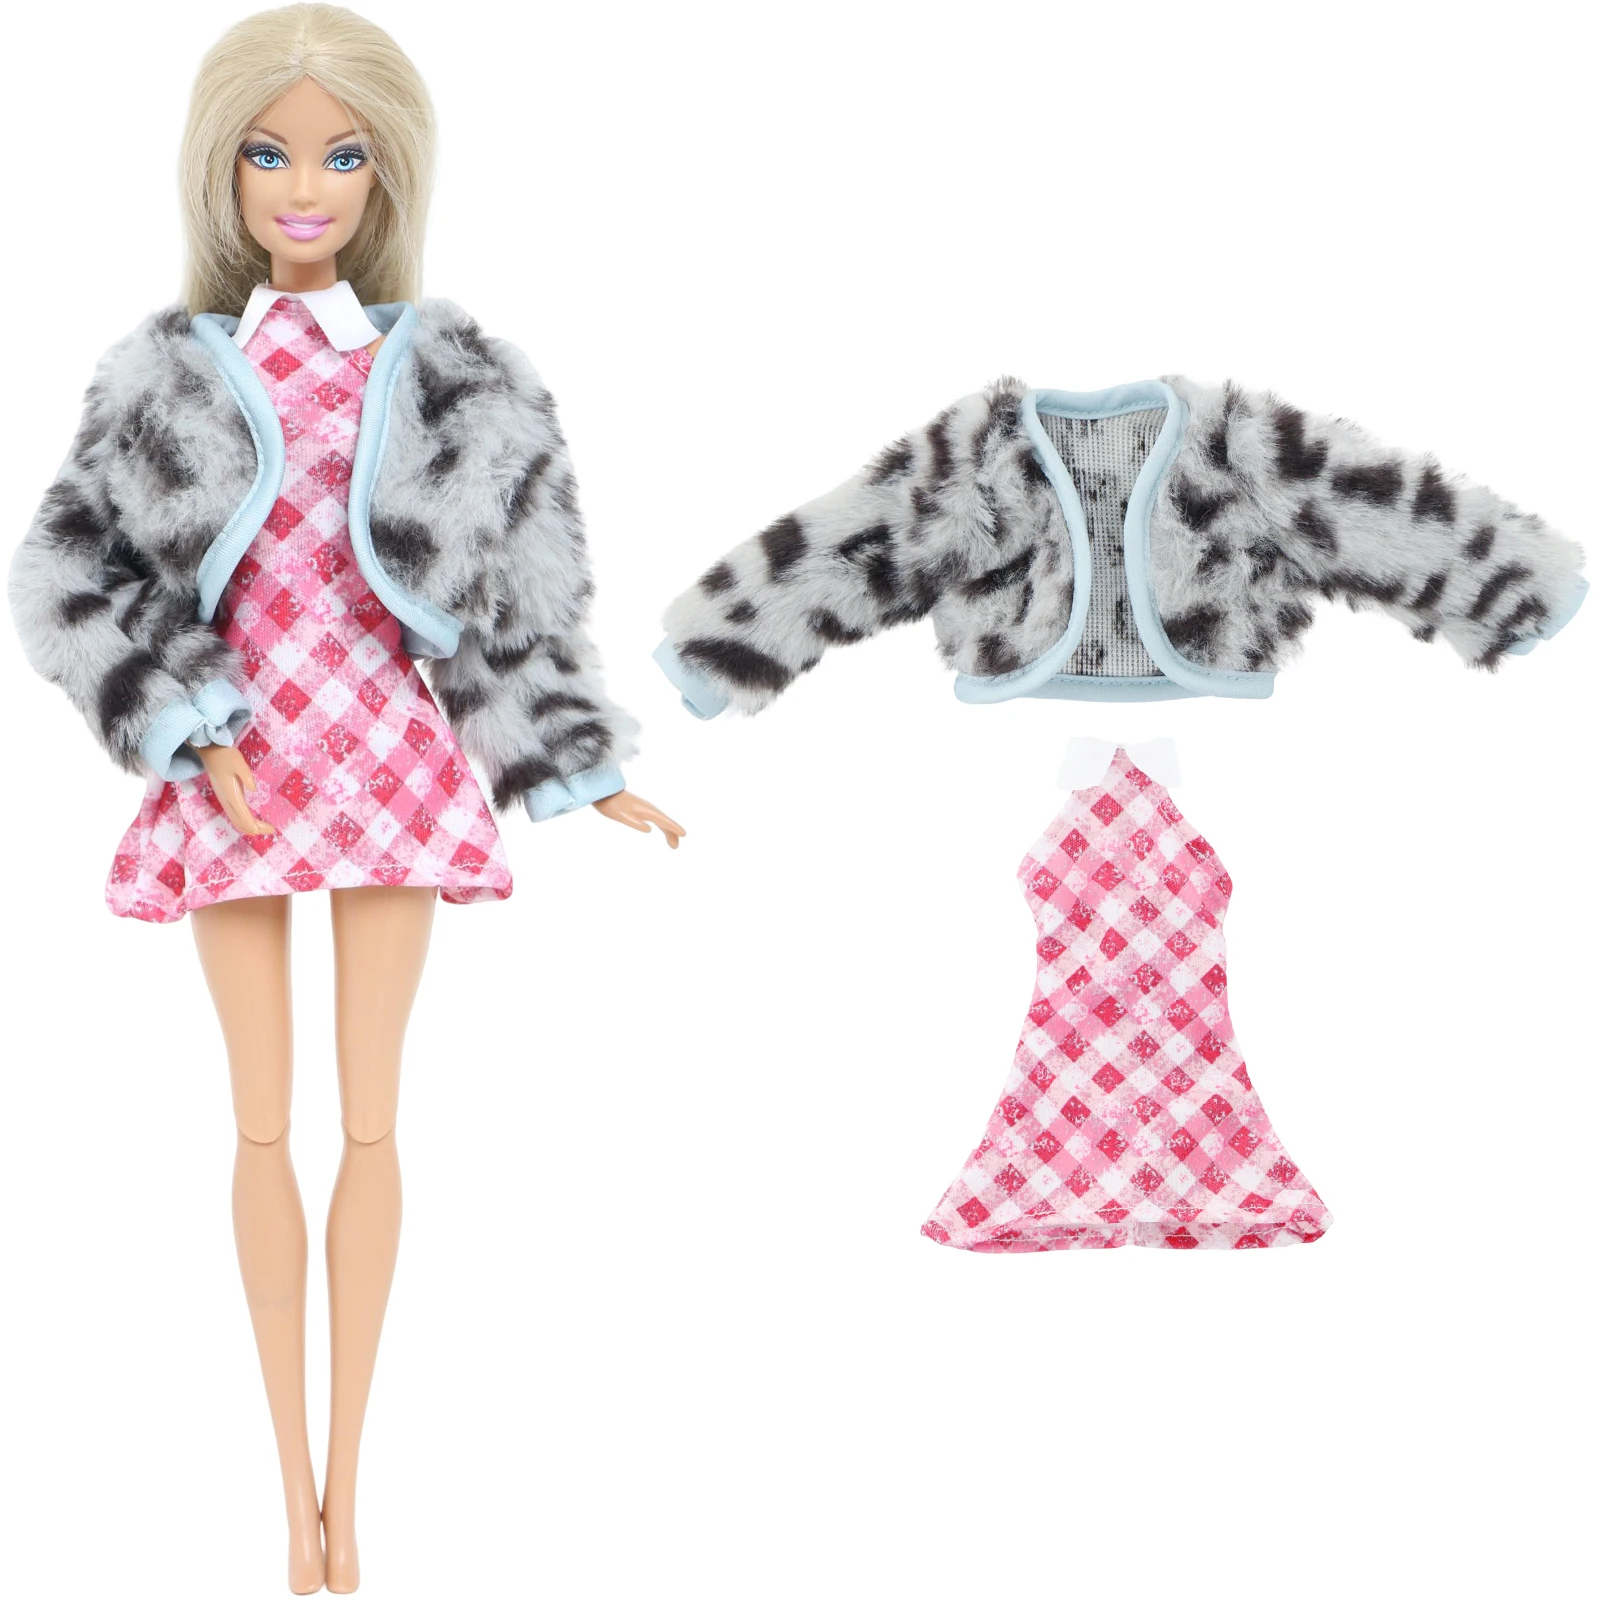 Nk-princesa maiô de uma peça para a boneca barbie, maiô de uma peça com  mangas de renda, roupas modernas, acessórios do brinquedo, presente, 1  conjunto - AliExpress